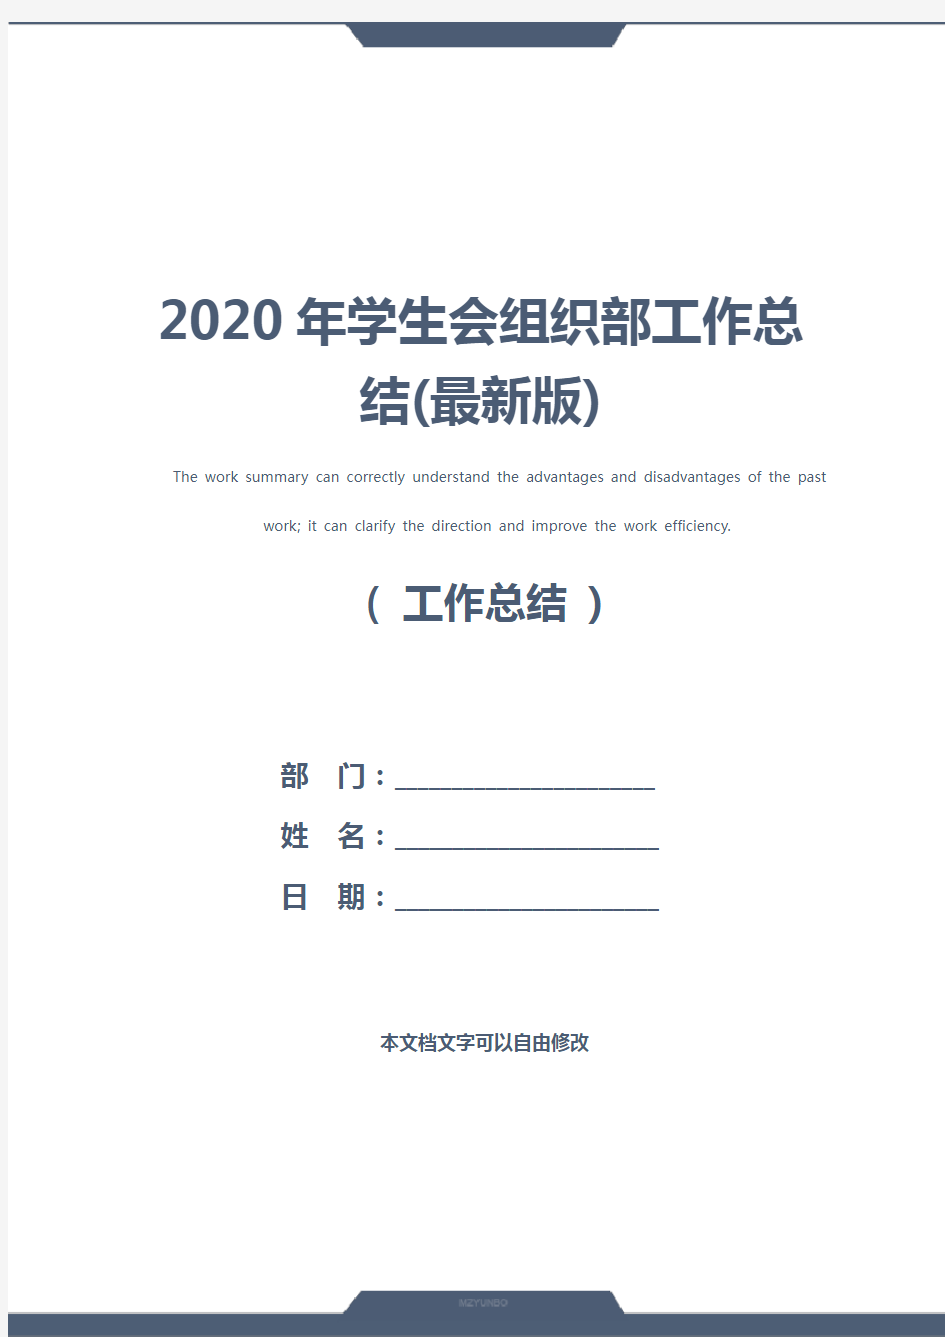 2020年学生会组织部工作总结(最新版)